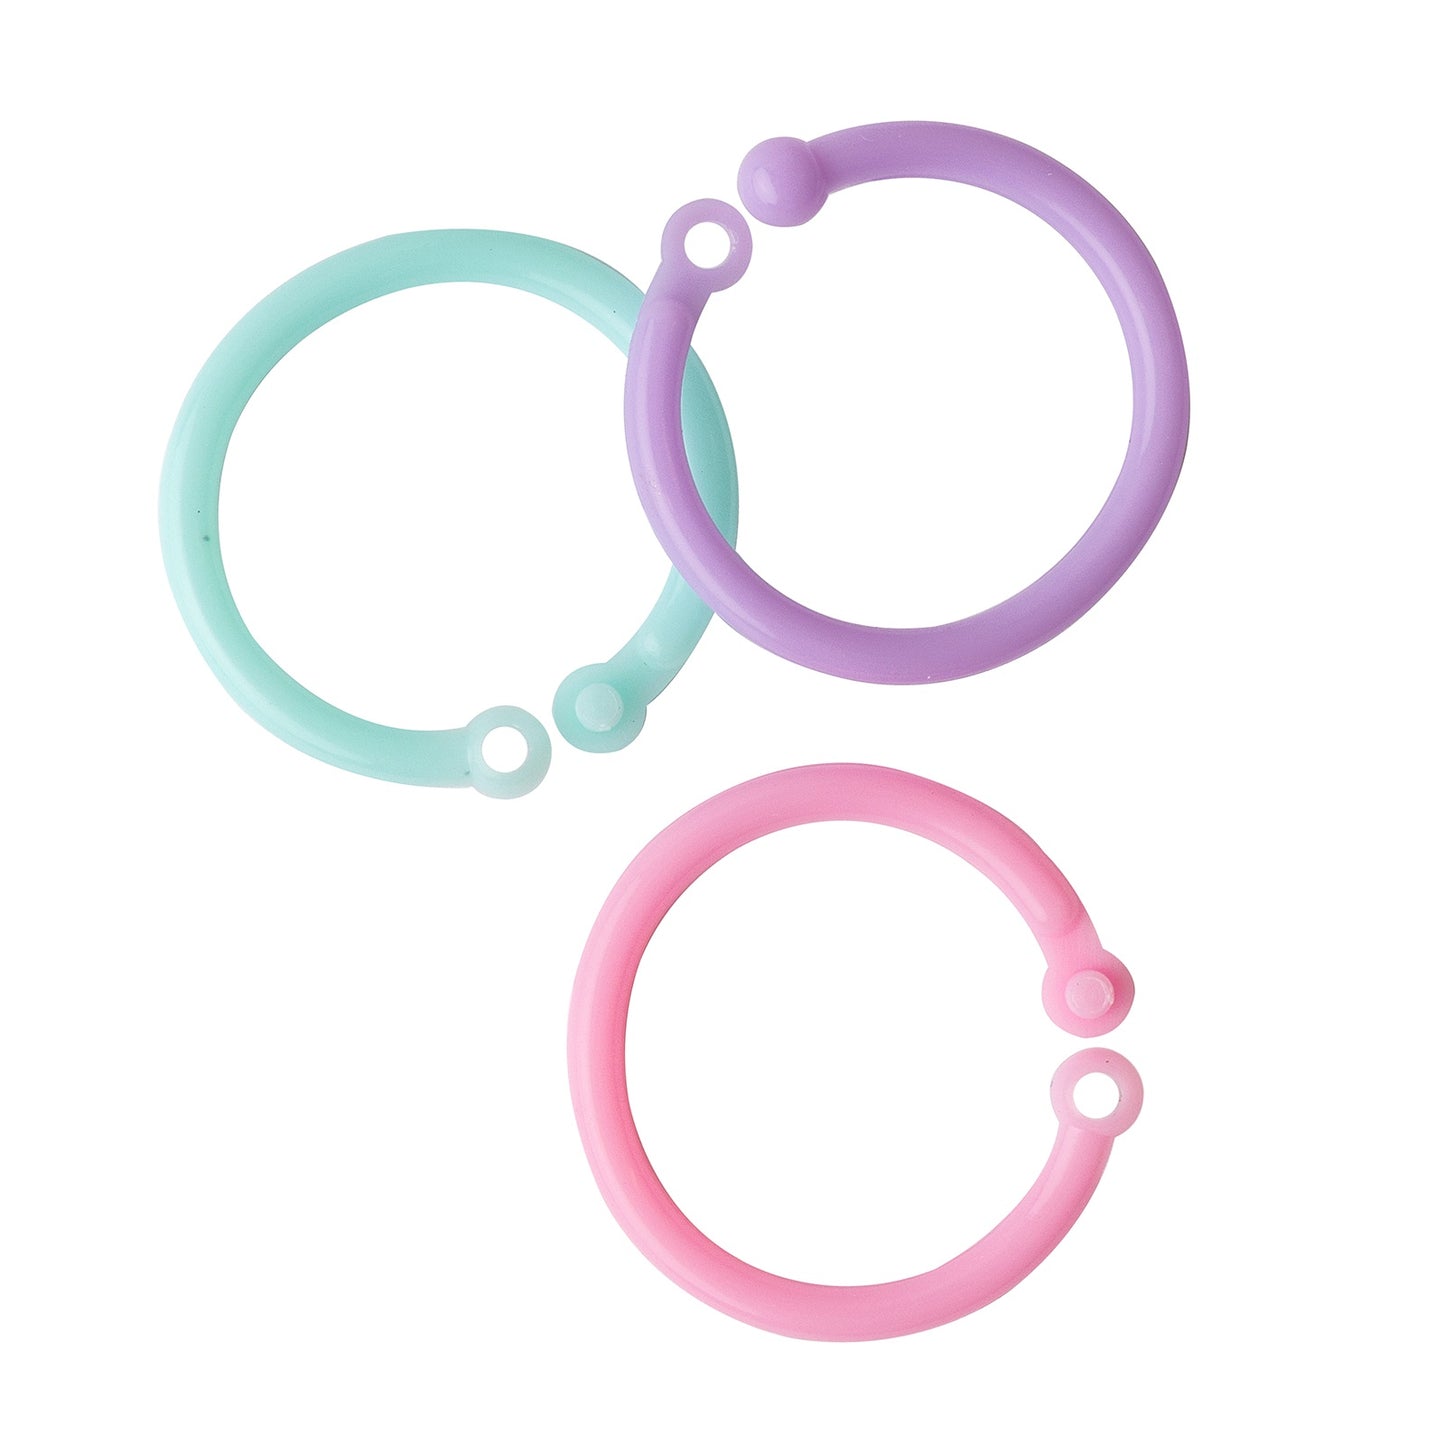 We R Memory Keepers Cinch Plastic Loop Binding 24/Pkg-Pink, Lilac & Blue